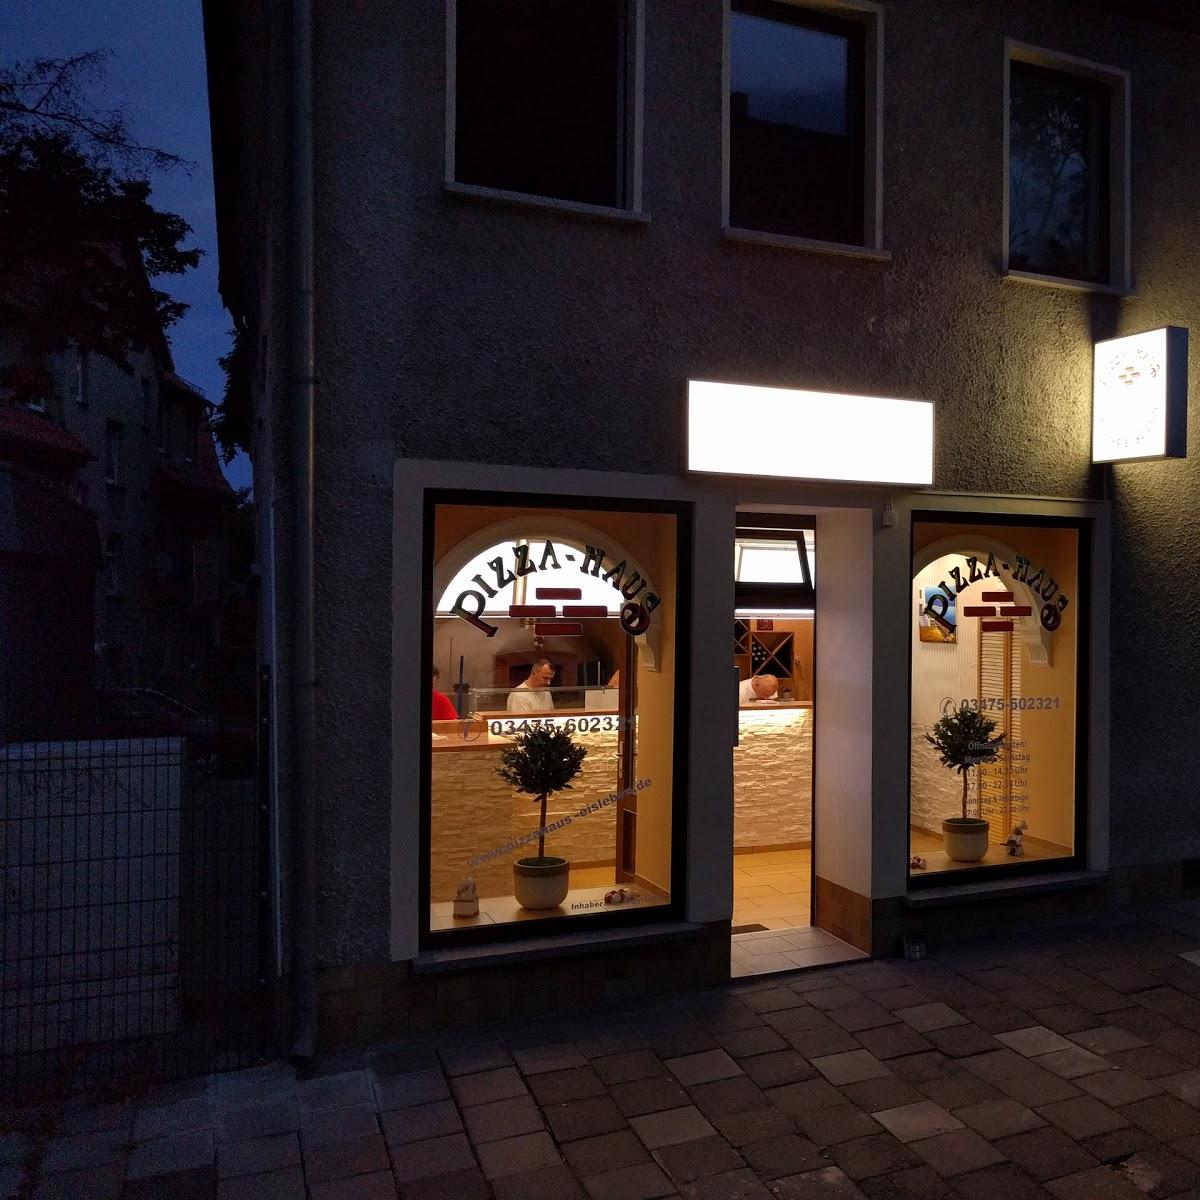 Restaurant "Pizza Haus" in Lutherstadt Eisleben